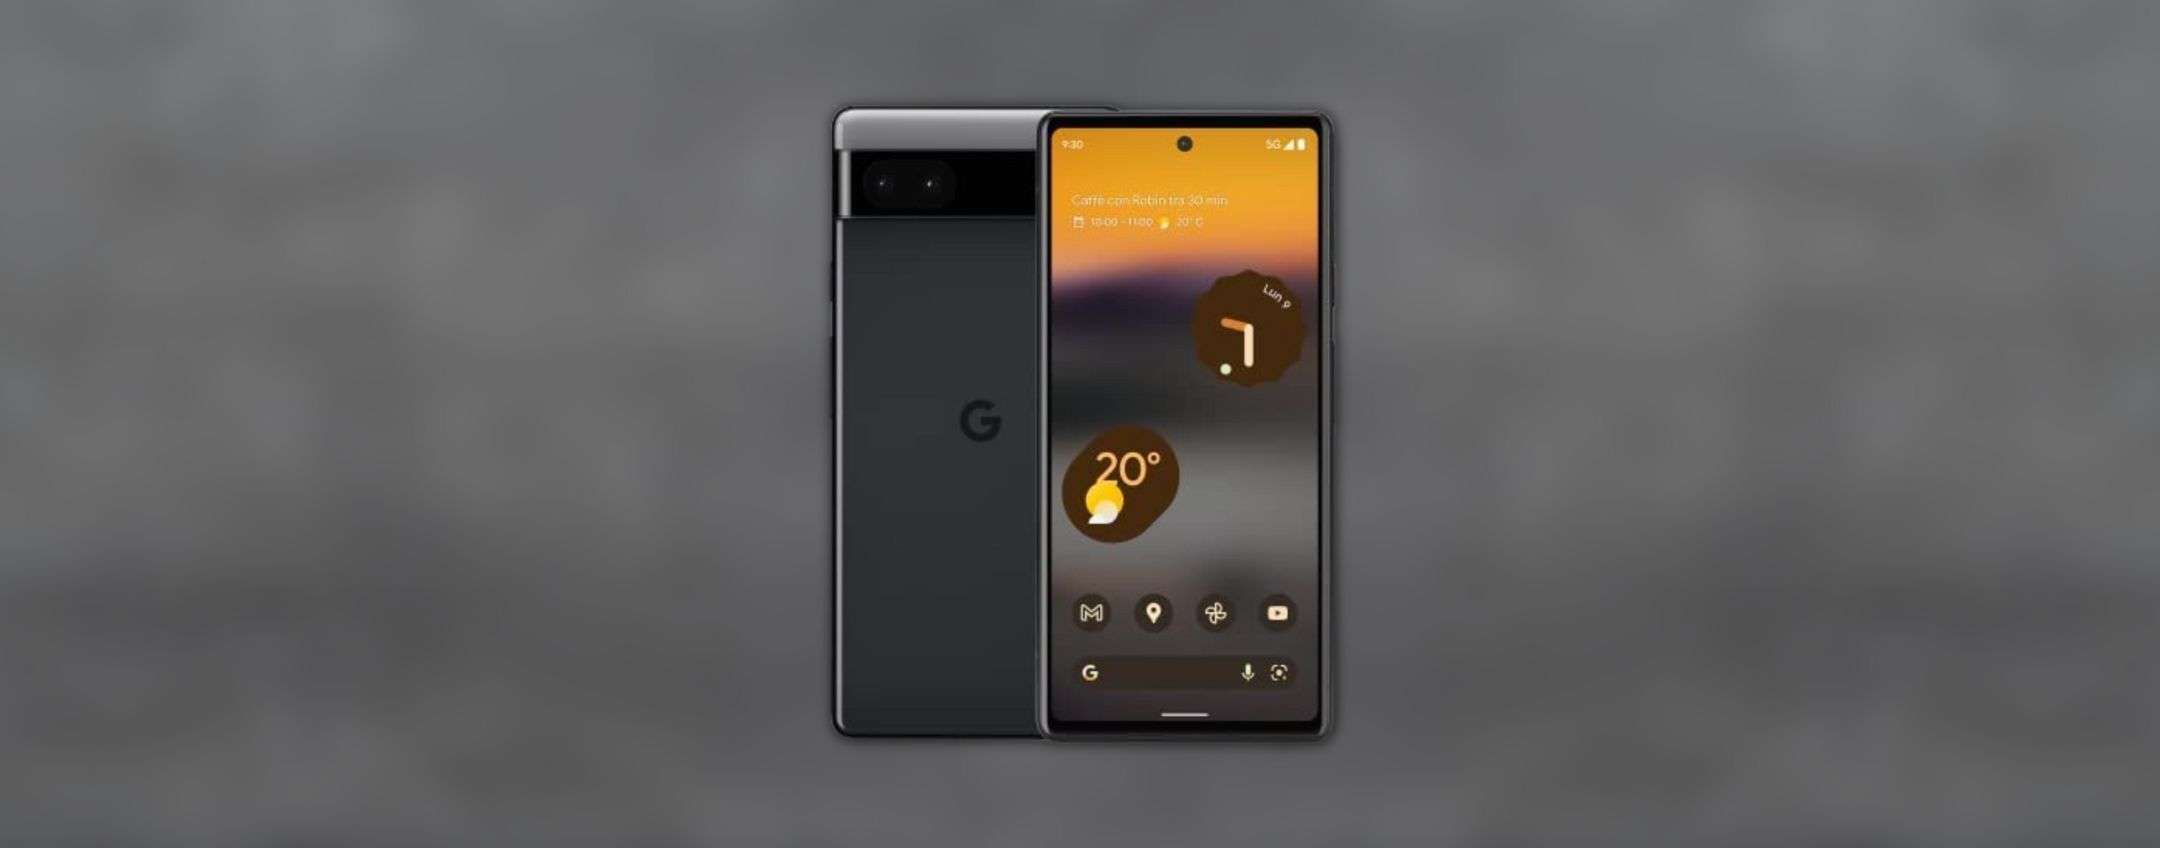 Google Pixel 6a offerta Amazon